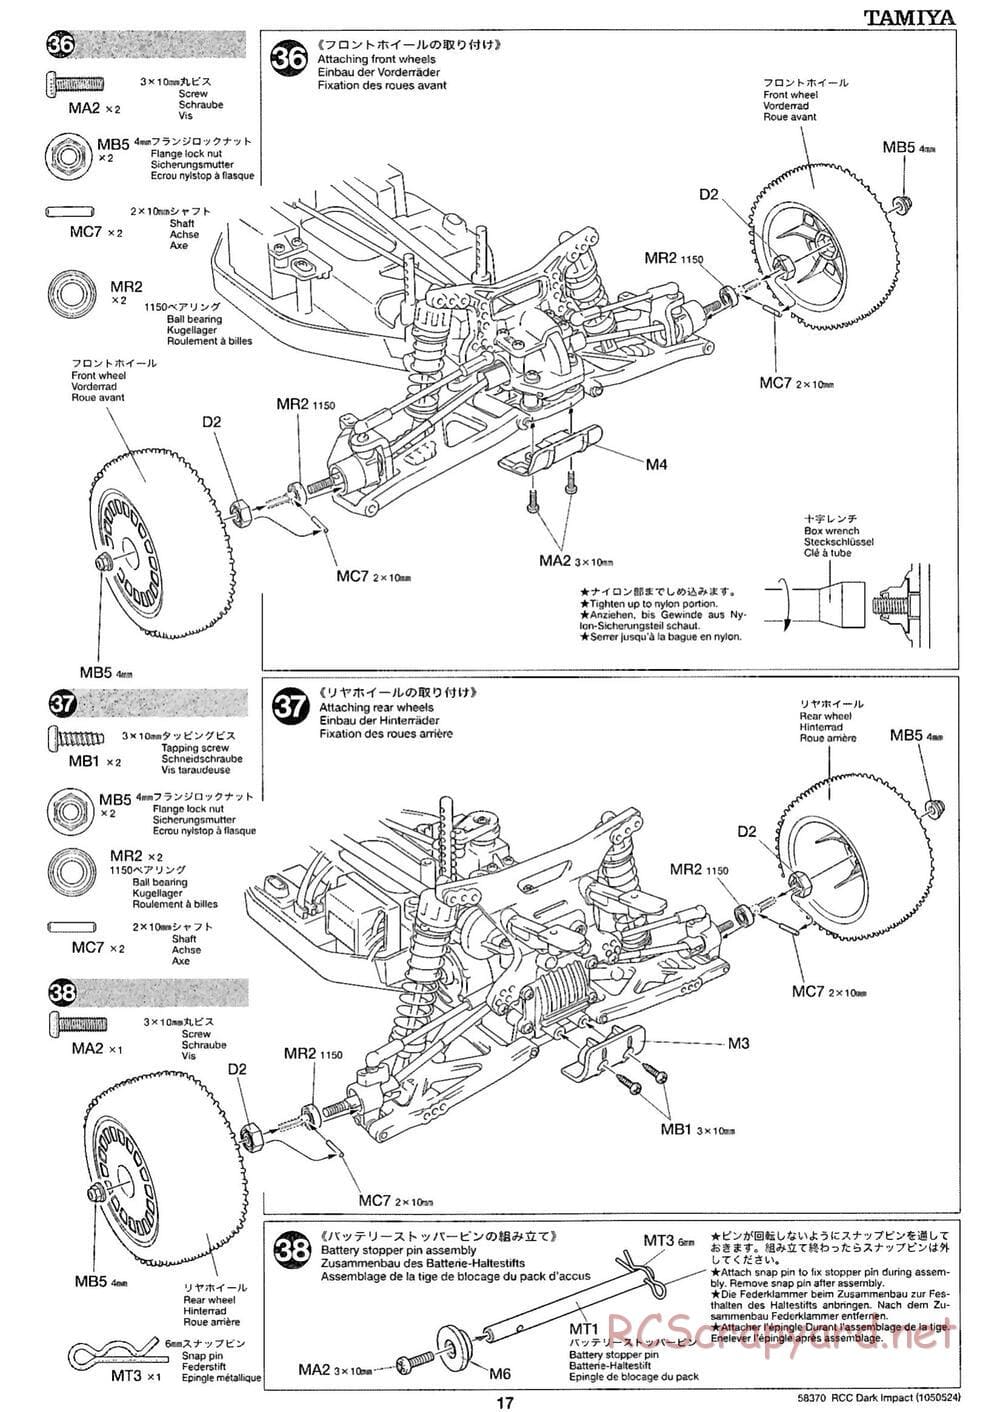 Tamiya - Dark Impact Chassis - Manual - Page 17